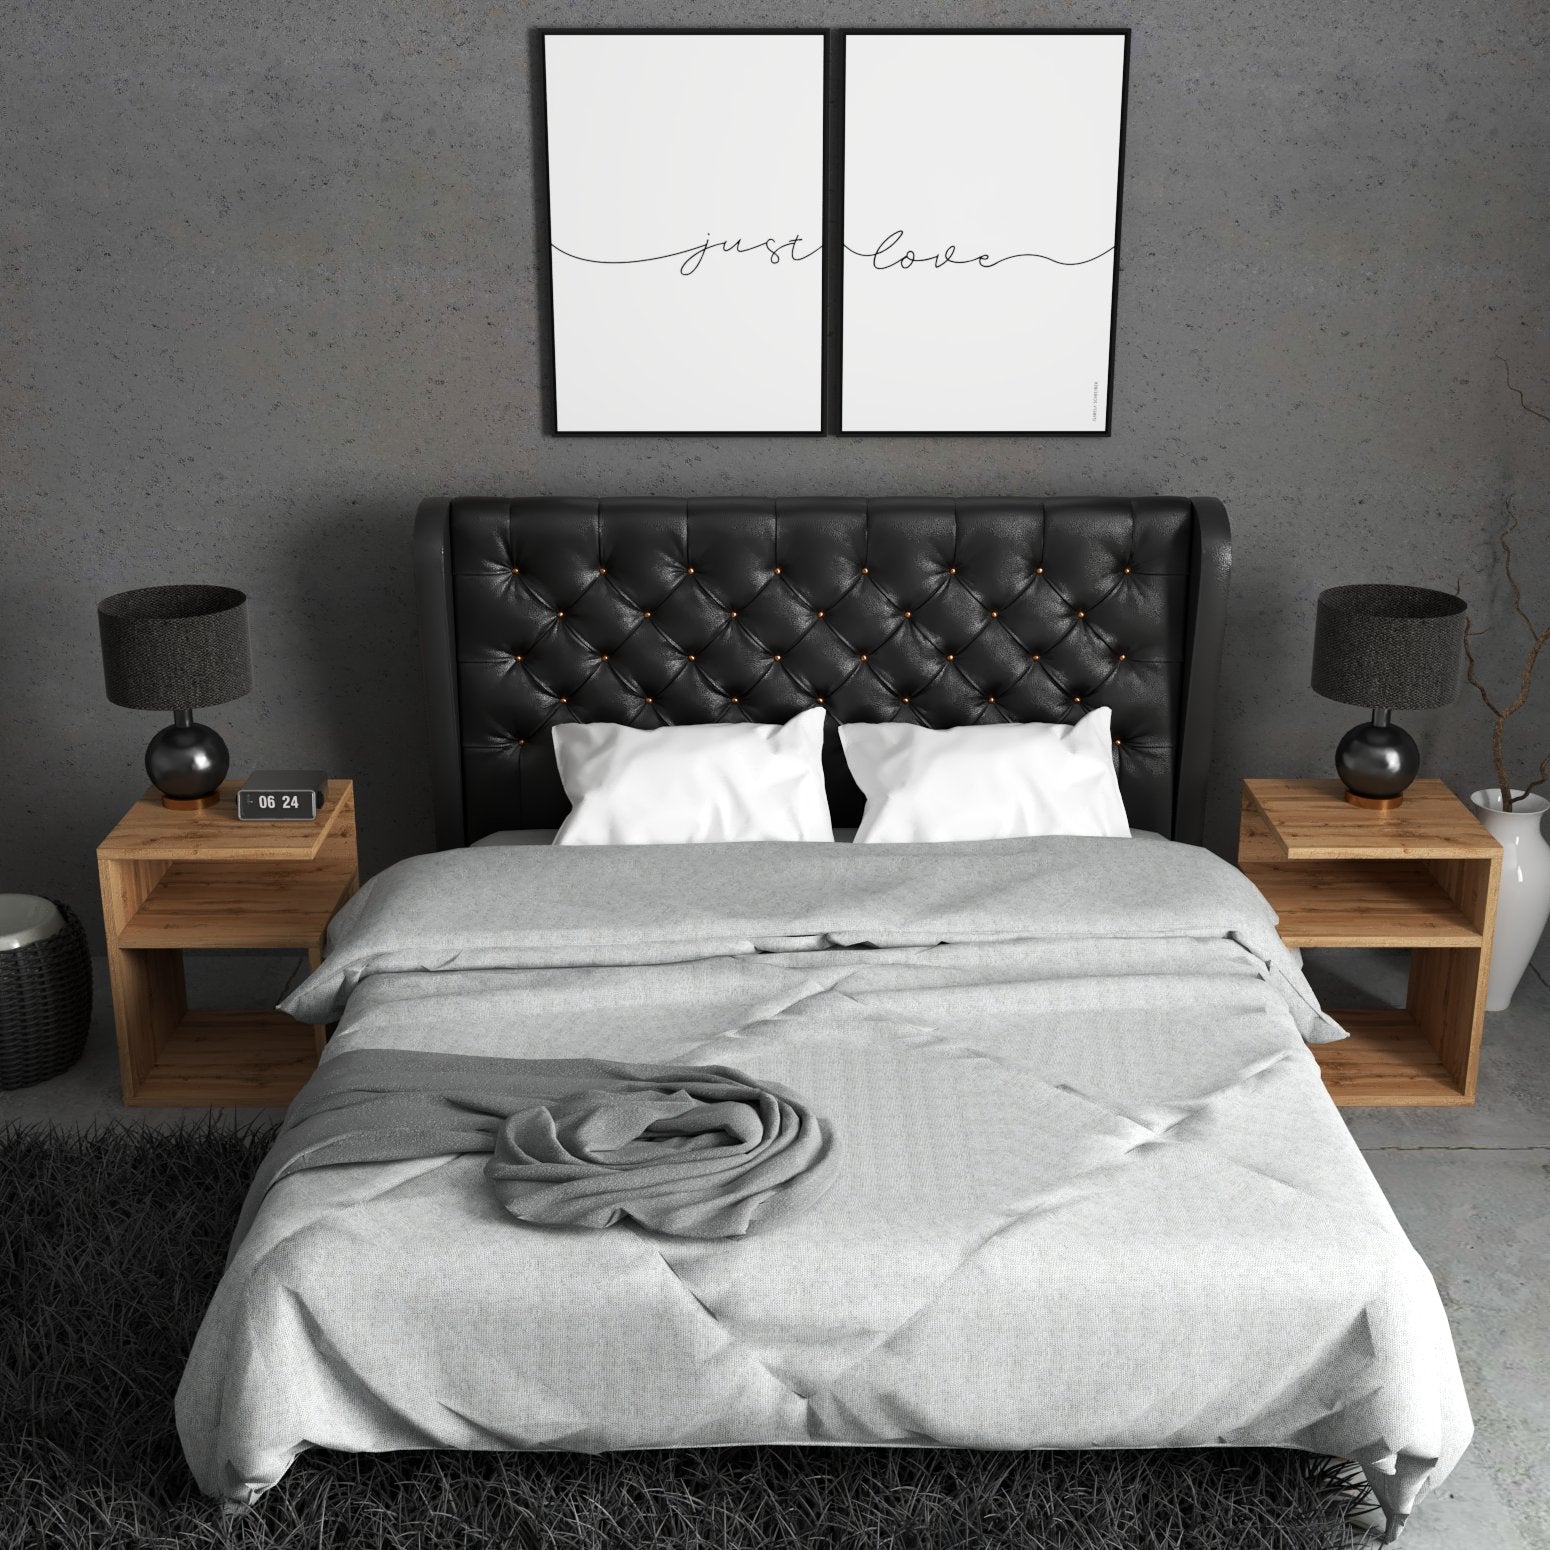 2 Nachttische in Eiche neben einem Schwarzen Bett mit grauer Decke und weißen Pölstern. An der grauen Wand hängen noch 2 Weiße Bilder